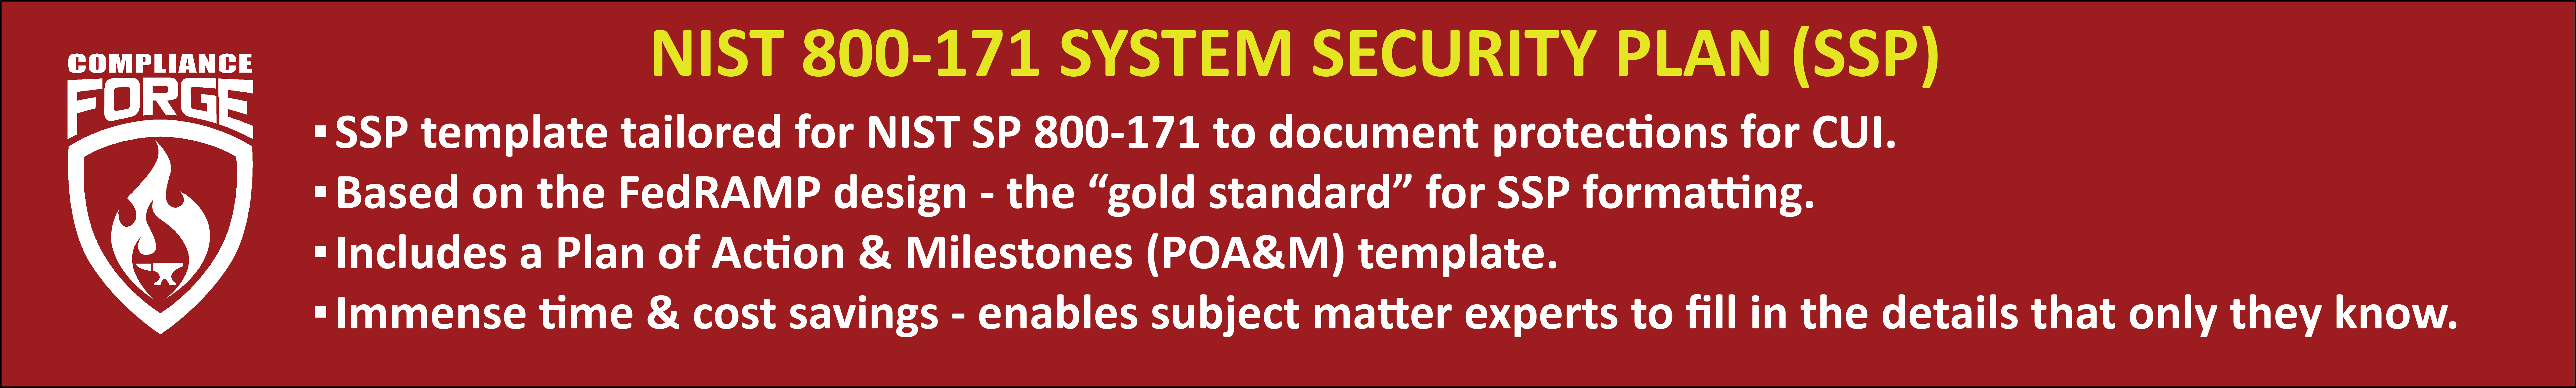 NIST 800-171 System Security Plan (SSP)